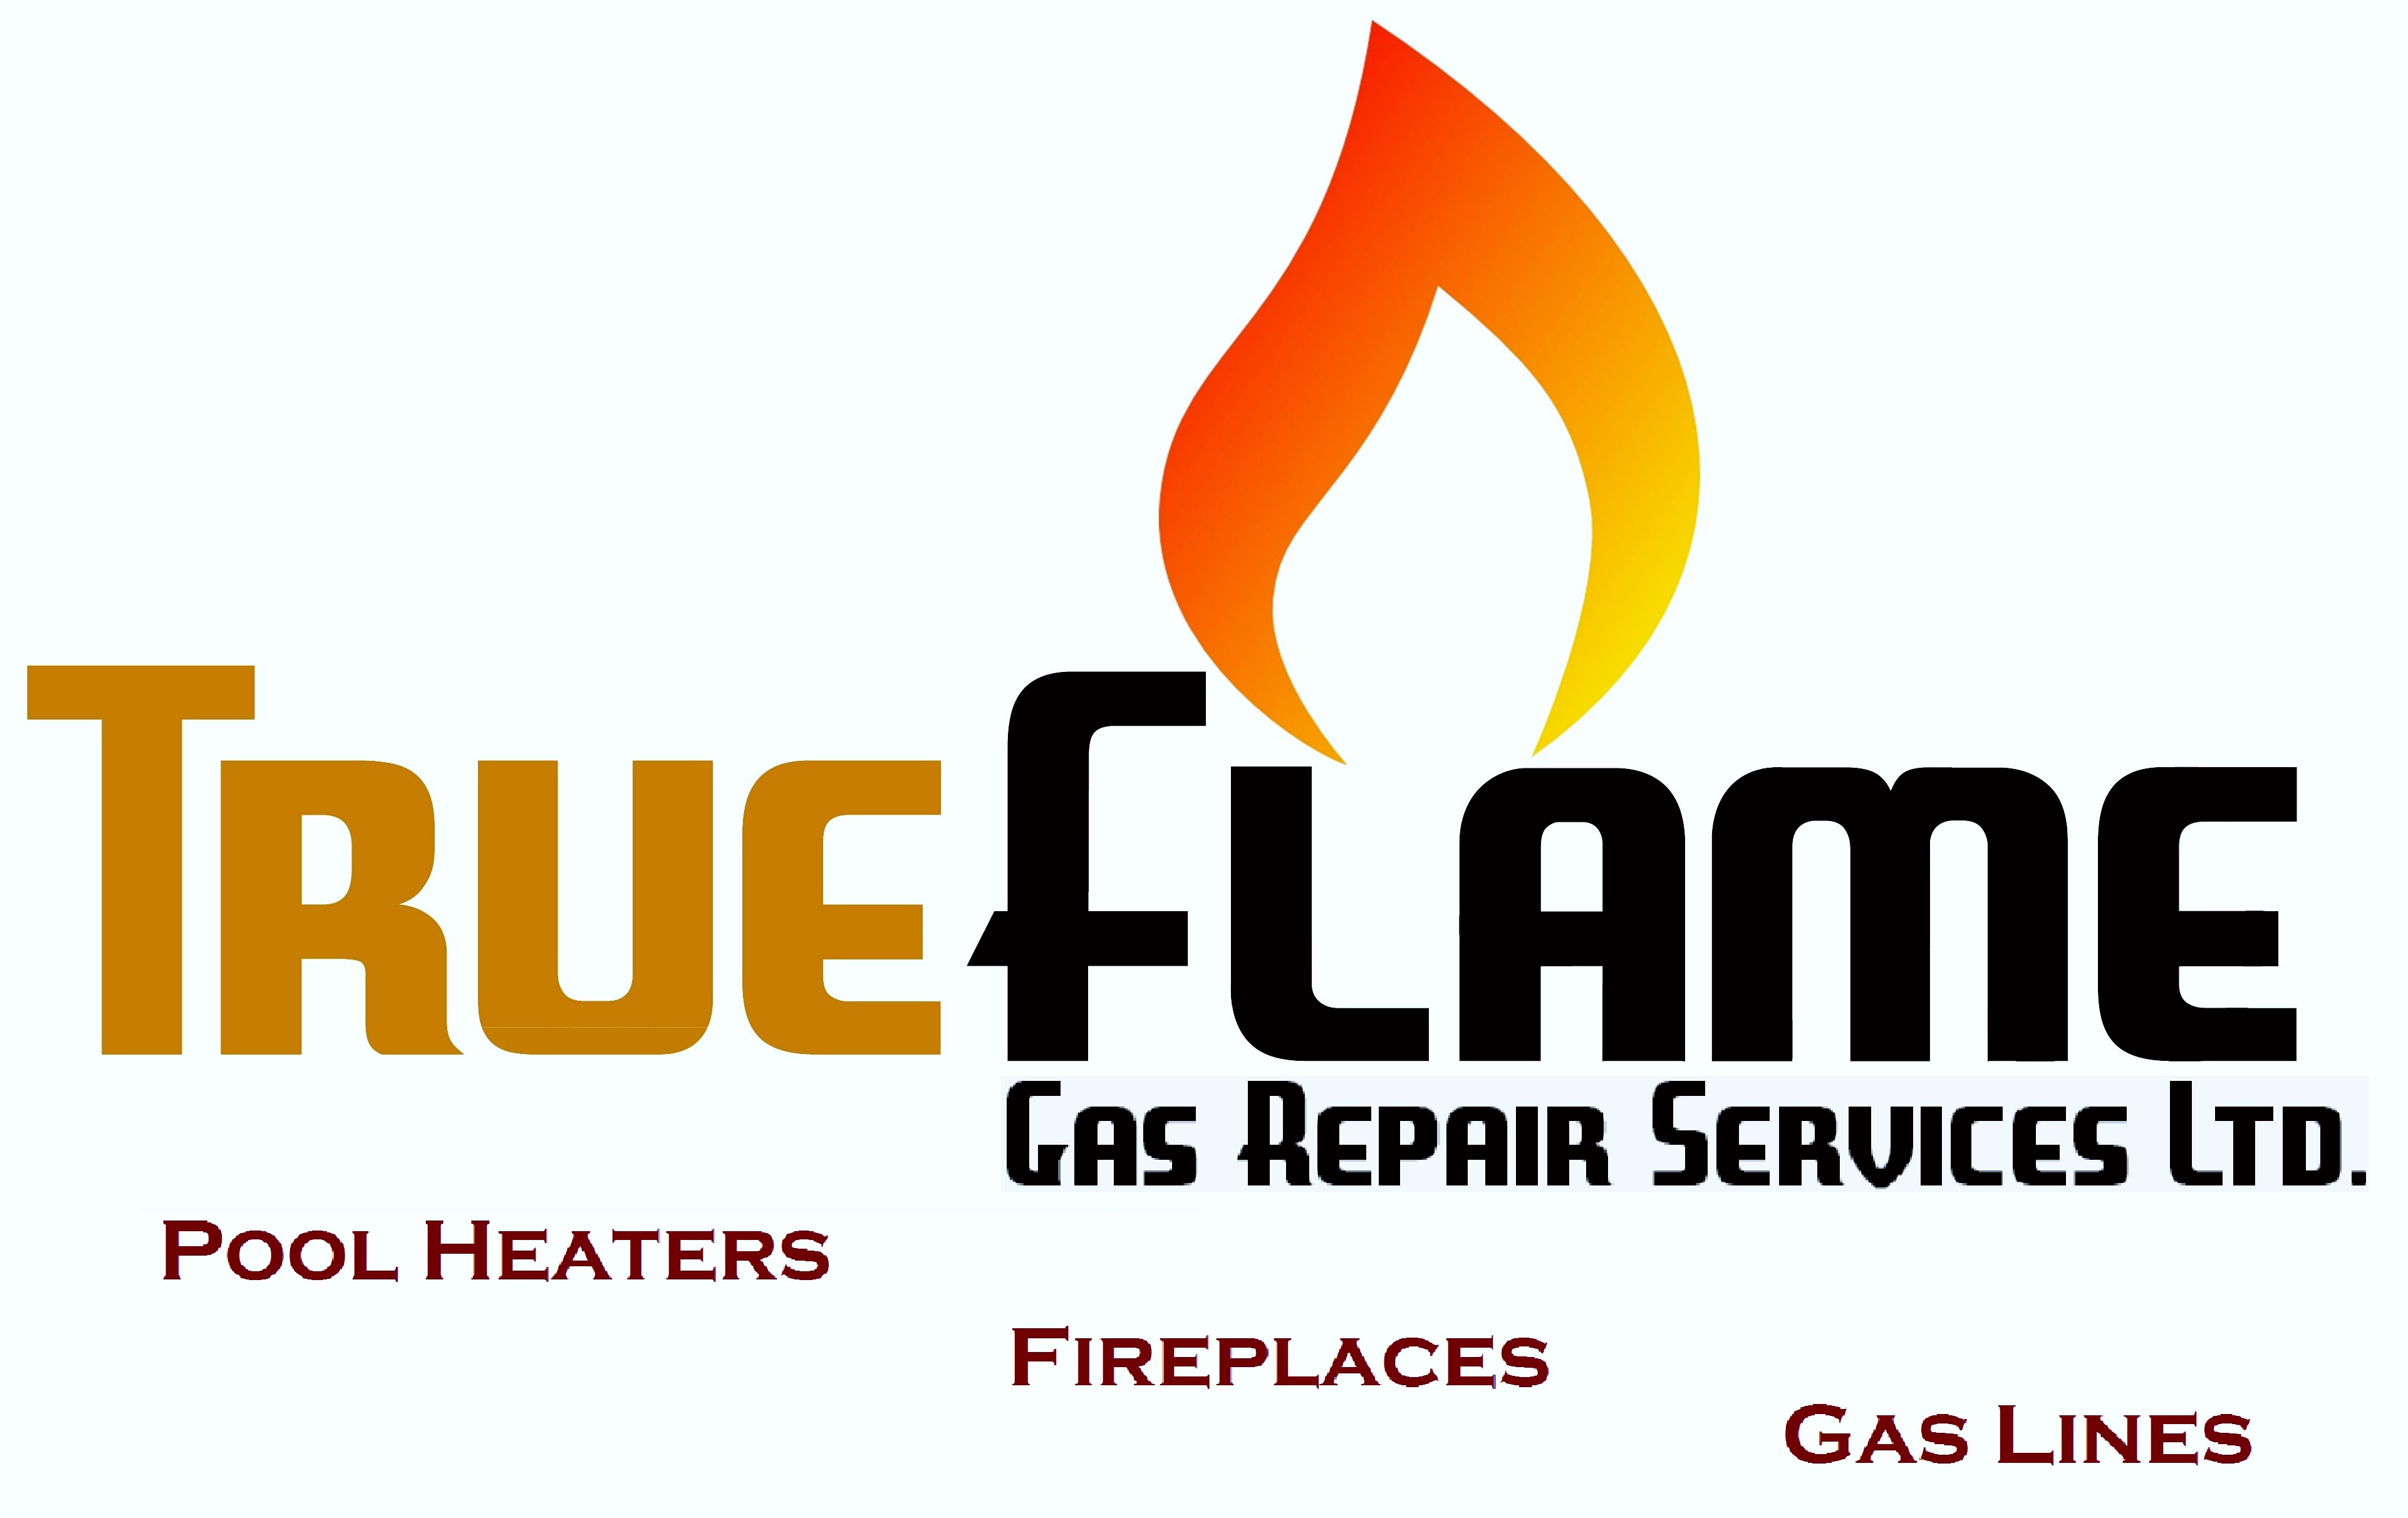 True Flame Gas Repair Services Ltd.'s logo